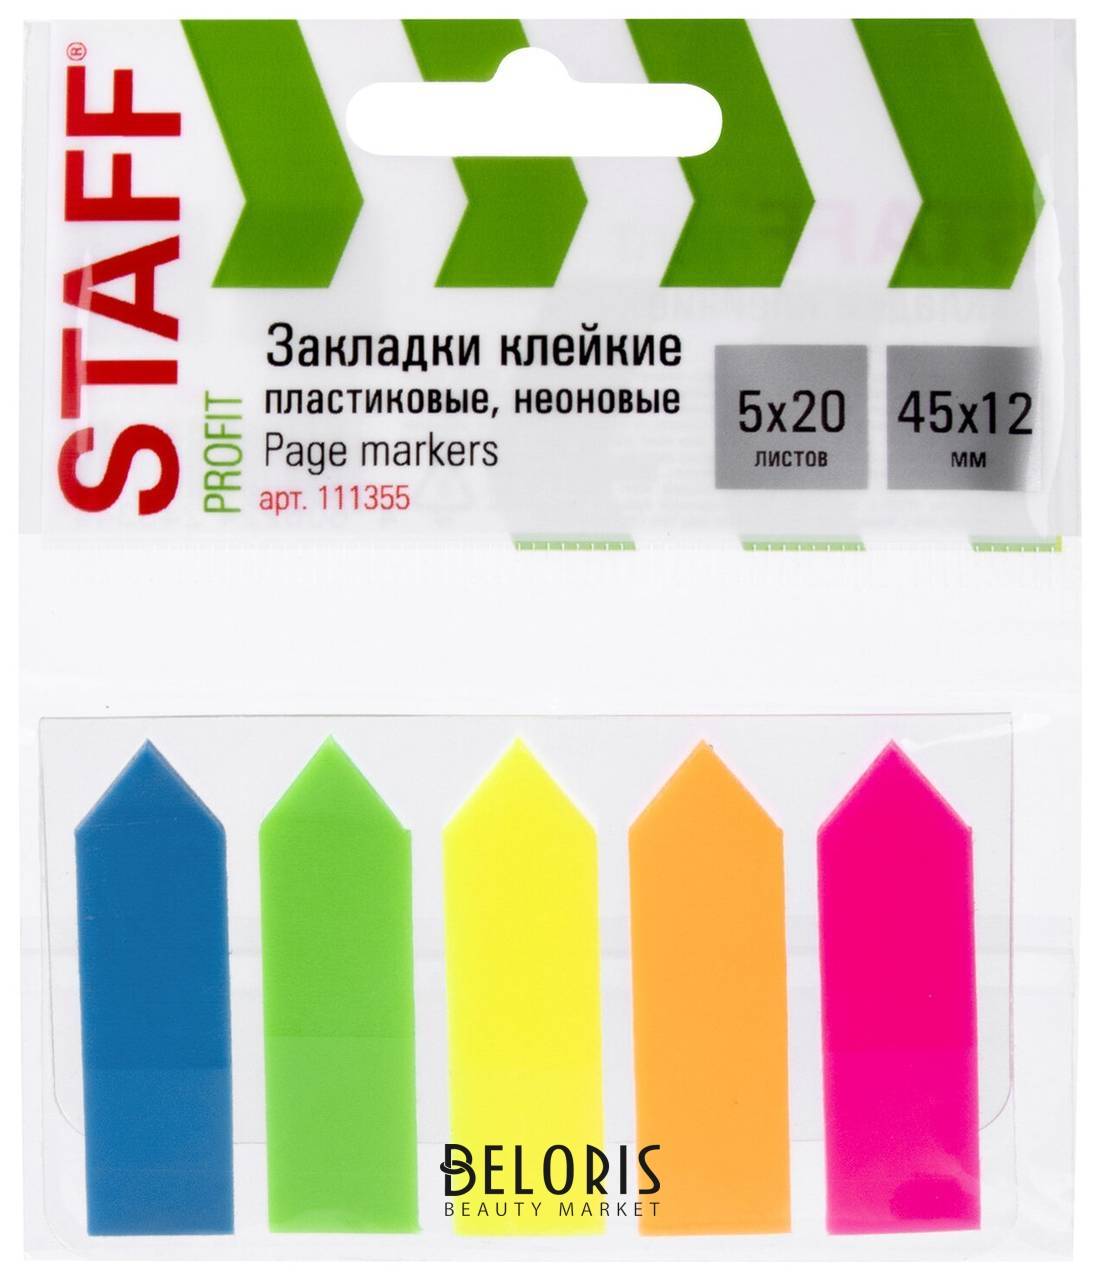 Закладки клейкие Staff неоновые Стрелки, 45х12 мм, 5 цветов х 20 листов, в пластиковой книжке, 111355 Staff